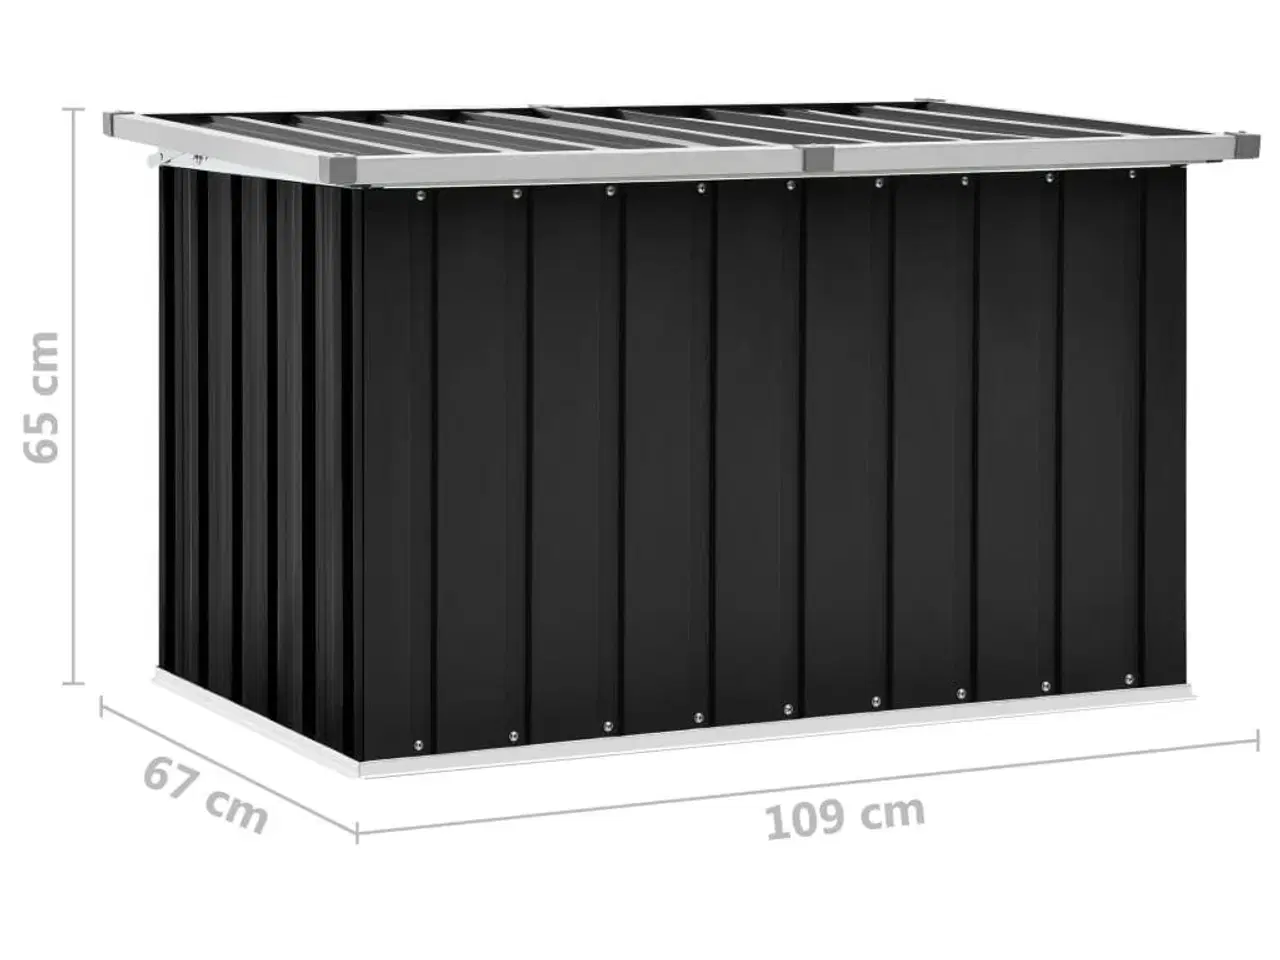 Billede 8 - Opbevaringskasse til haven 109x67x65 cm antracitgrå